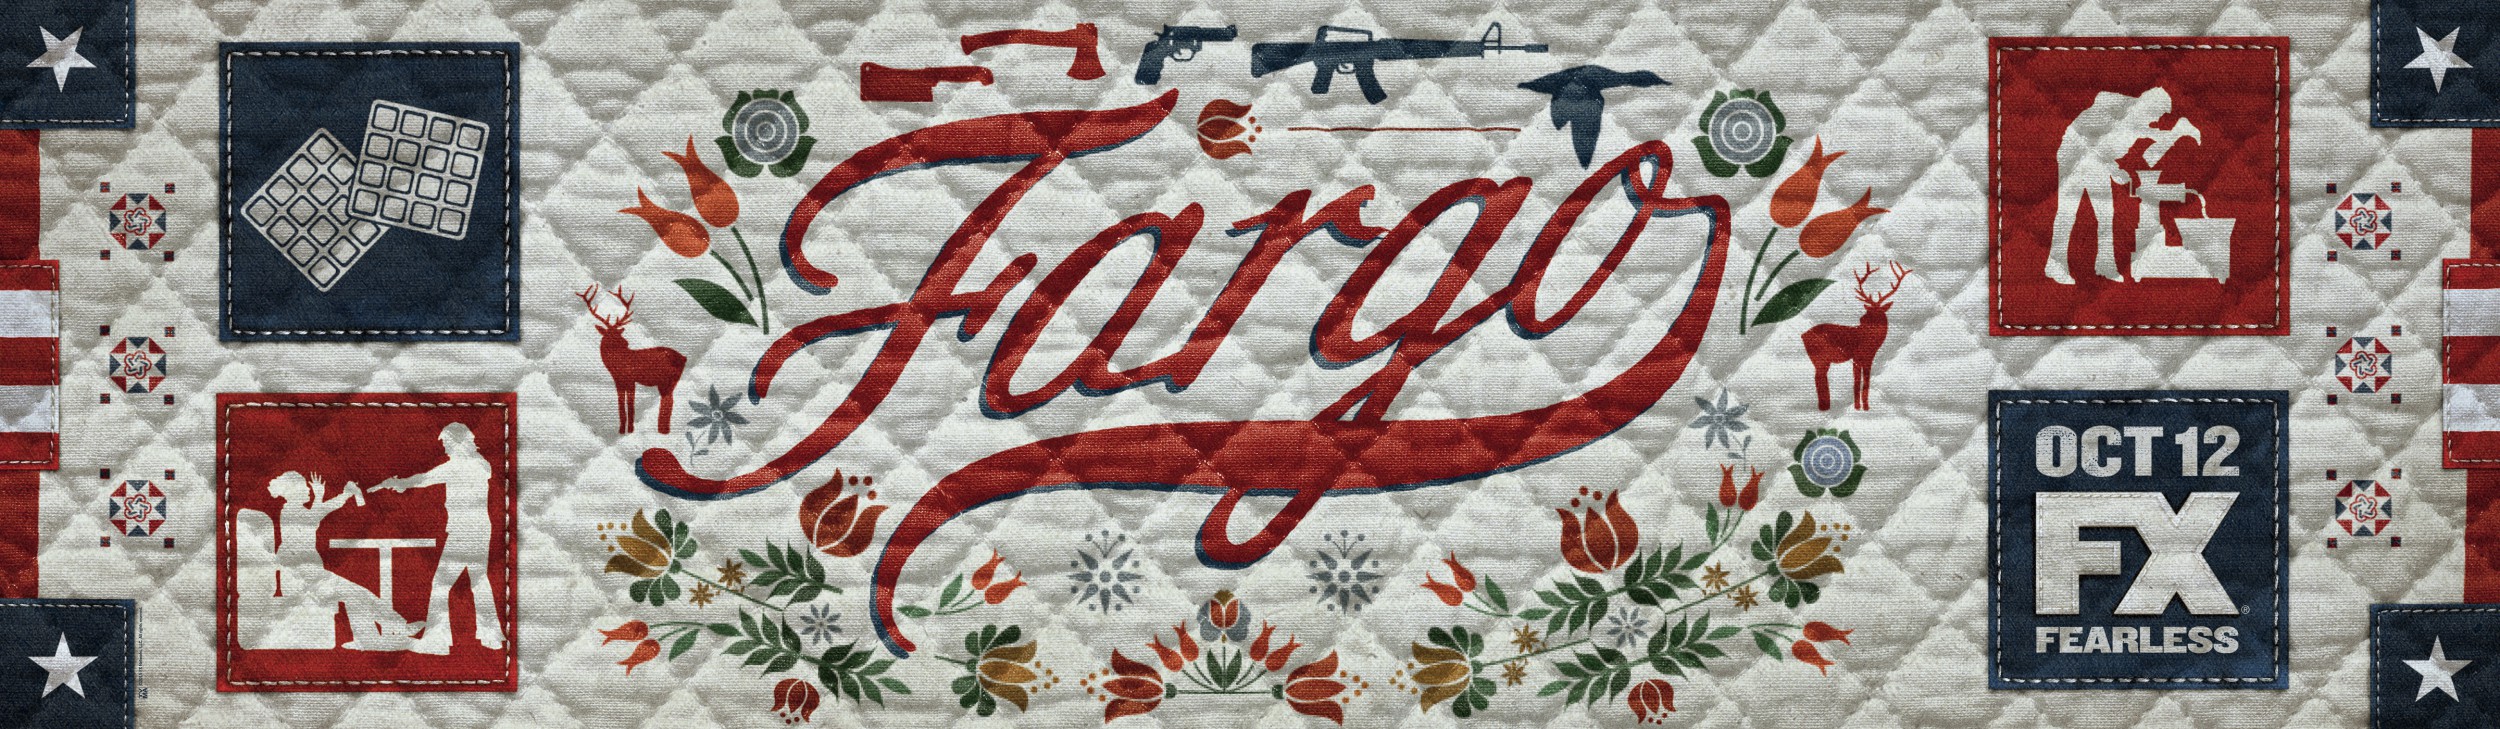 Mega Sized TV Poster Image for Fargo (#4 of 11)